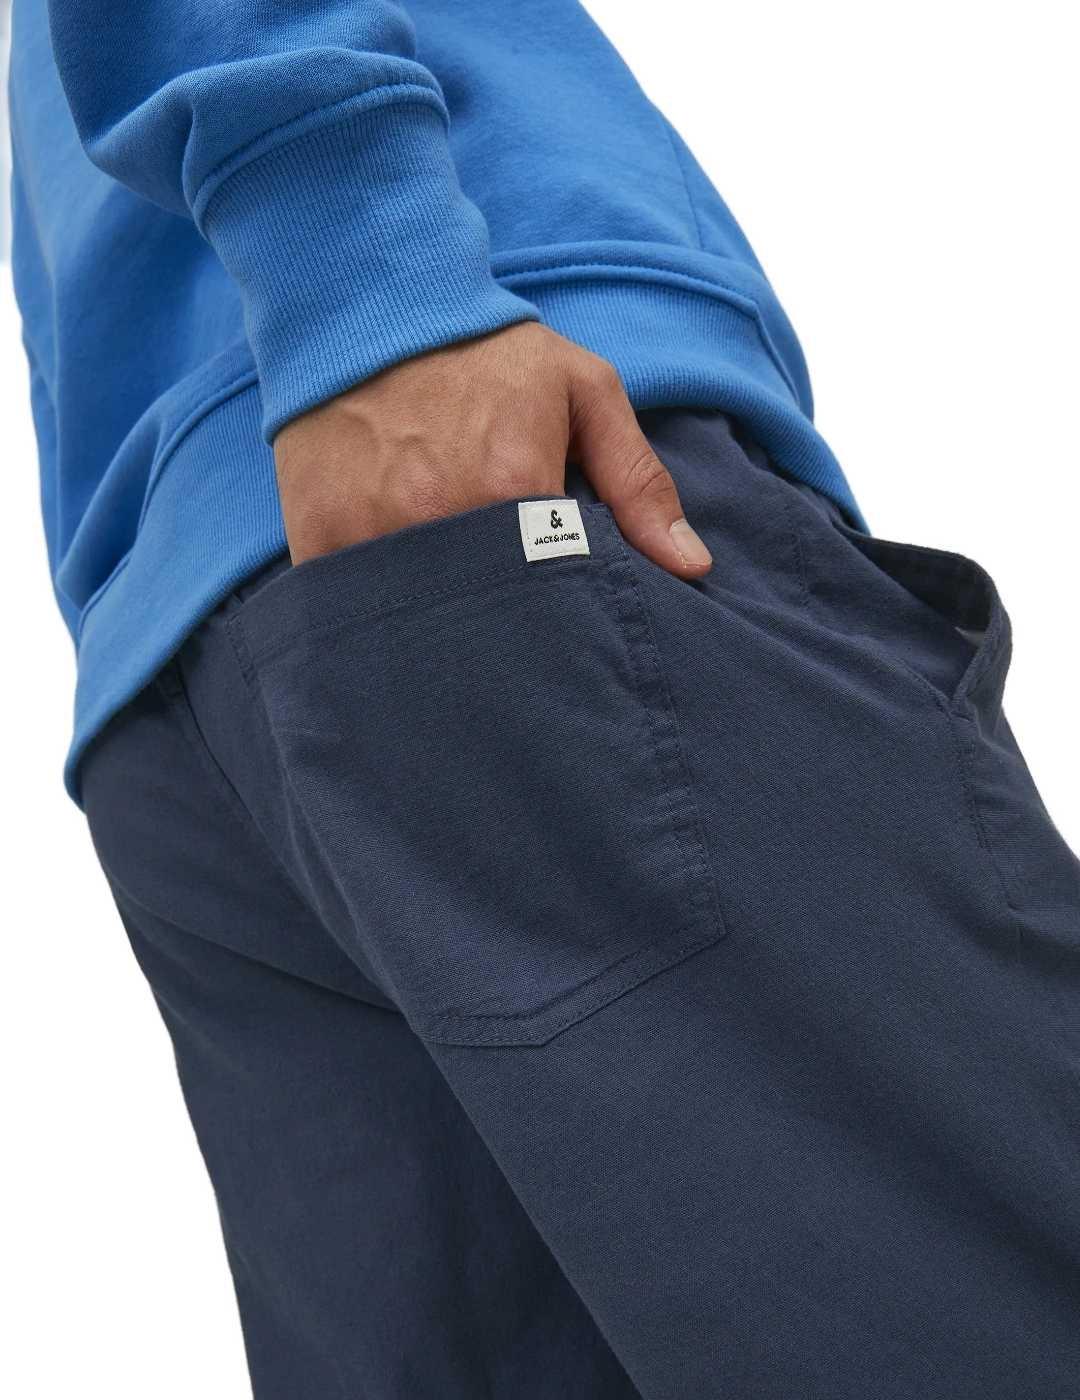 Pantalón Jack&Jones Stace azul marino de lino para hombre